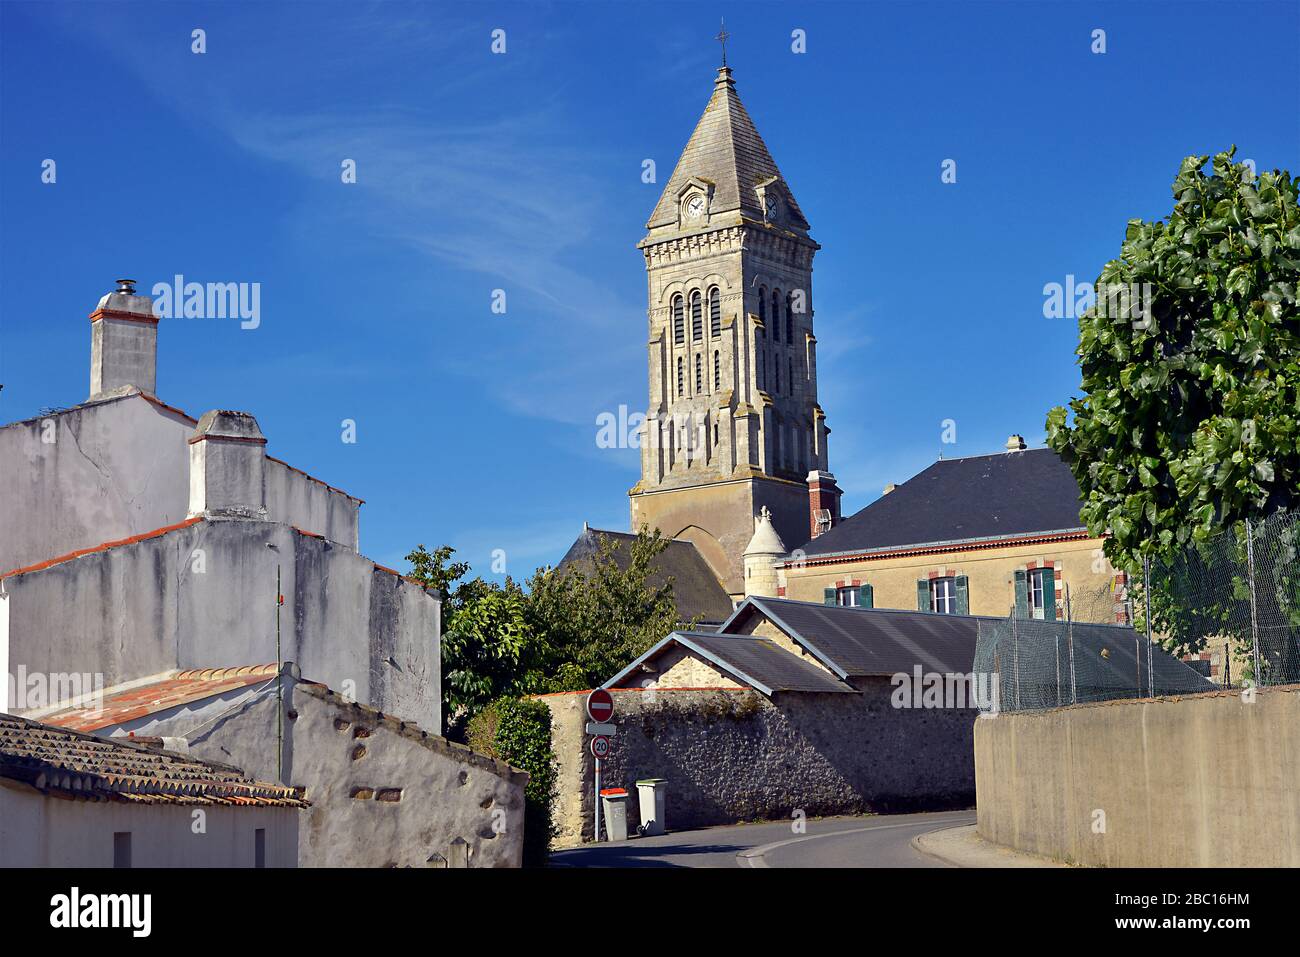 Campanile chiesa di Noirmoutier en l'Ile nella Loira, regione nella Francia occidentale Foto Stock